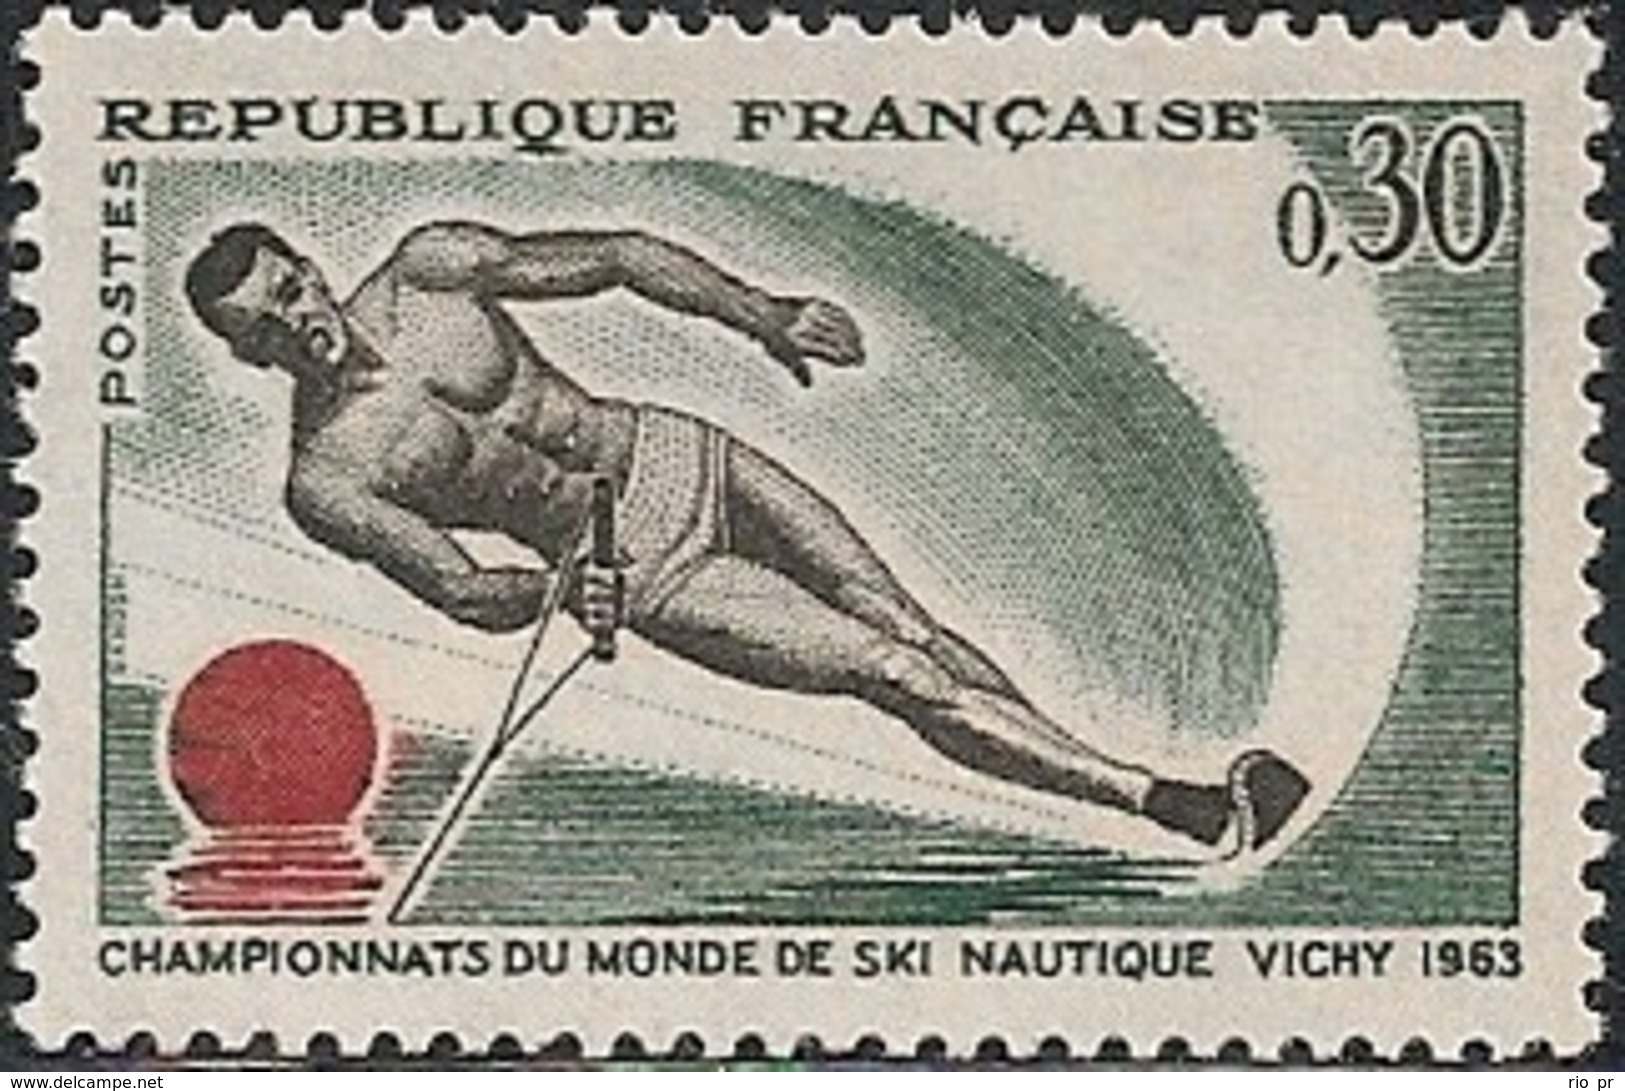 FRANCE - WORLD WATER-SKIING CHAMPIONSHIPS, VICHY 1963 - MNH - Water-skiing